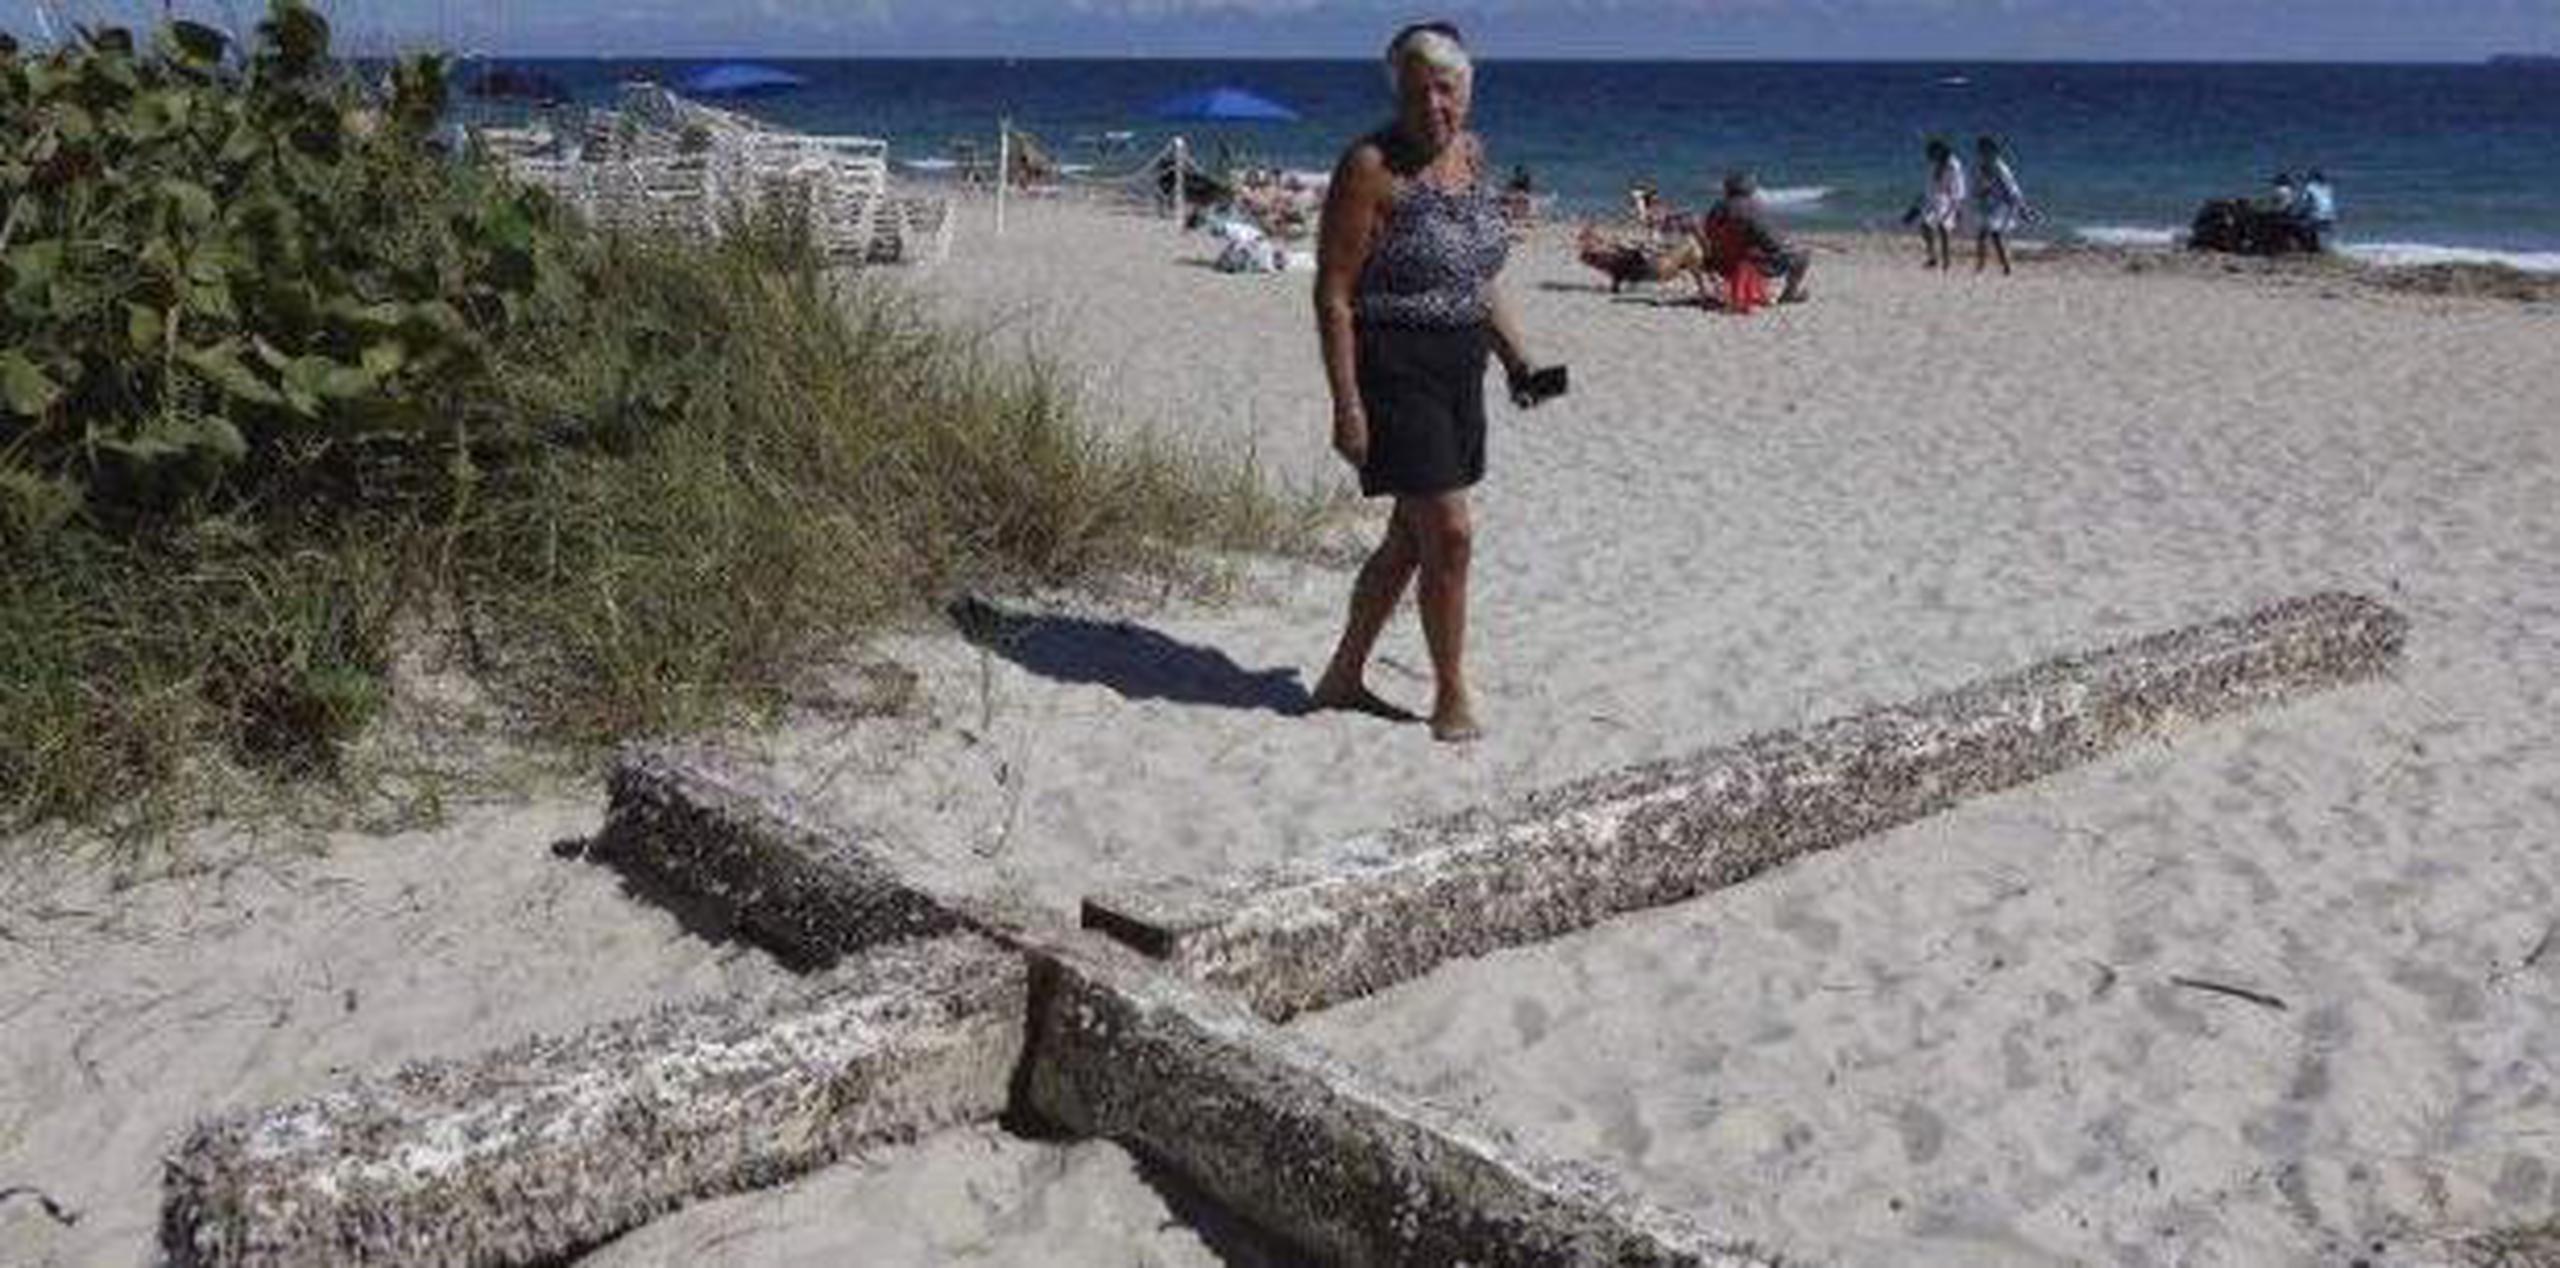 La cruz fue arrastrada el fin de semana pasado por las olas hasta una zona de playa muy concurrida situada frente a un hotel. (AP)